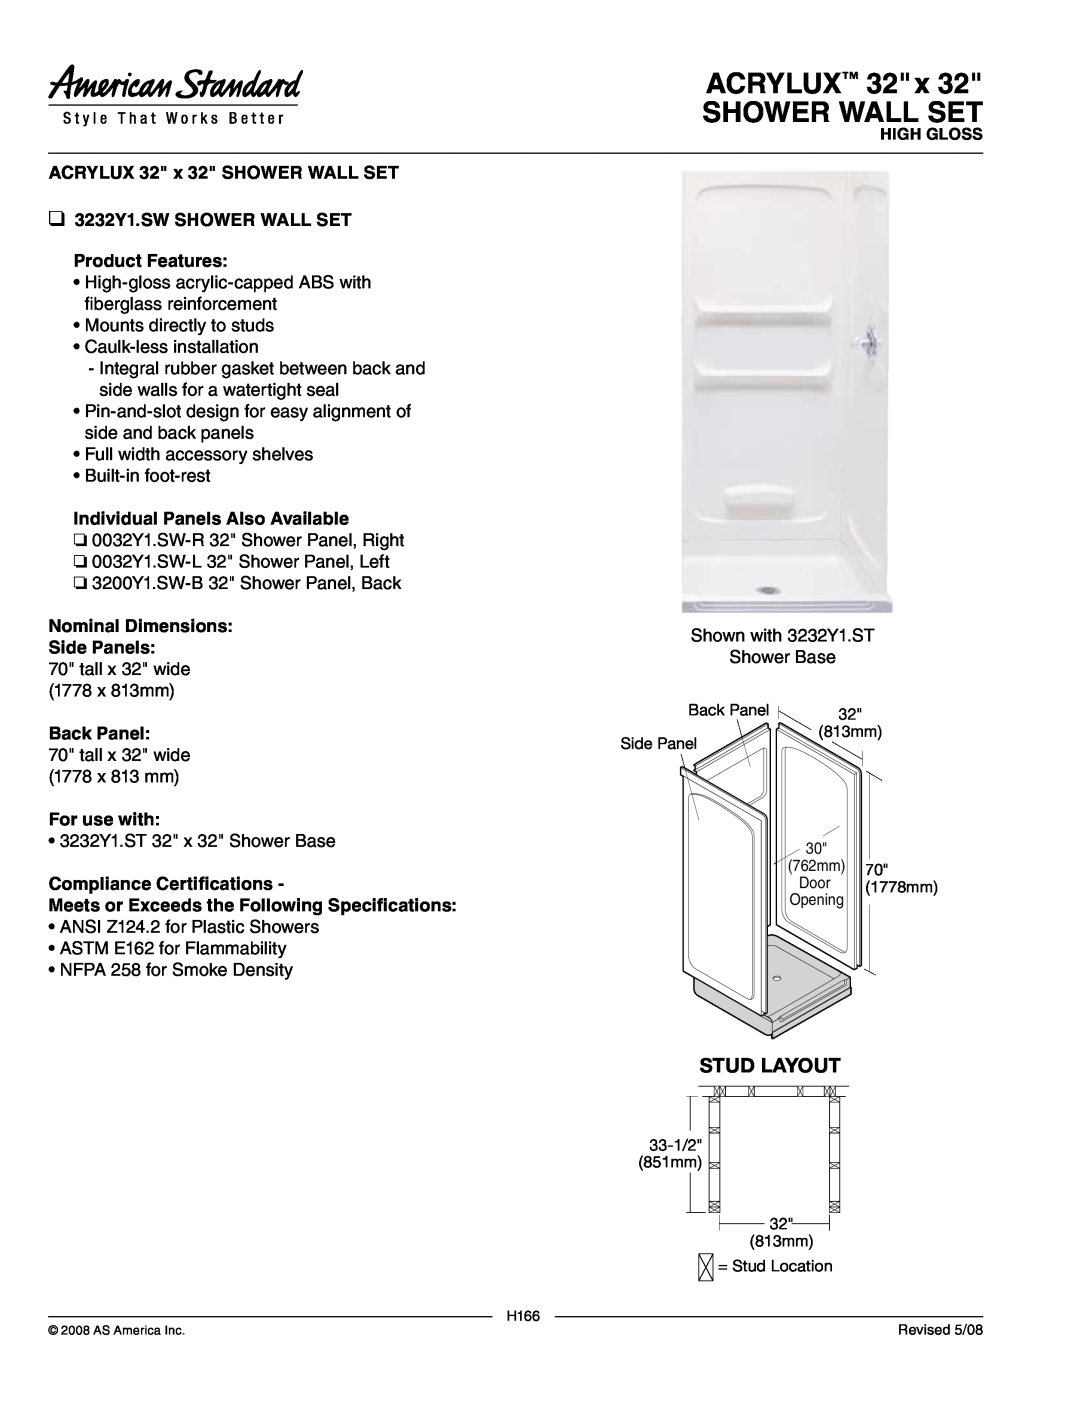 American Standard 3232Y1.SW dimensions ACRYLUX 32 x SHOWER WALL SET, Stud Layout, ACRYLUX 32 x 32 SHOWER WALL set 